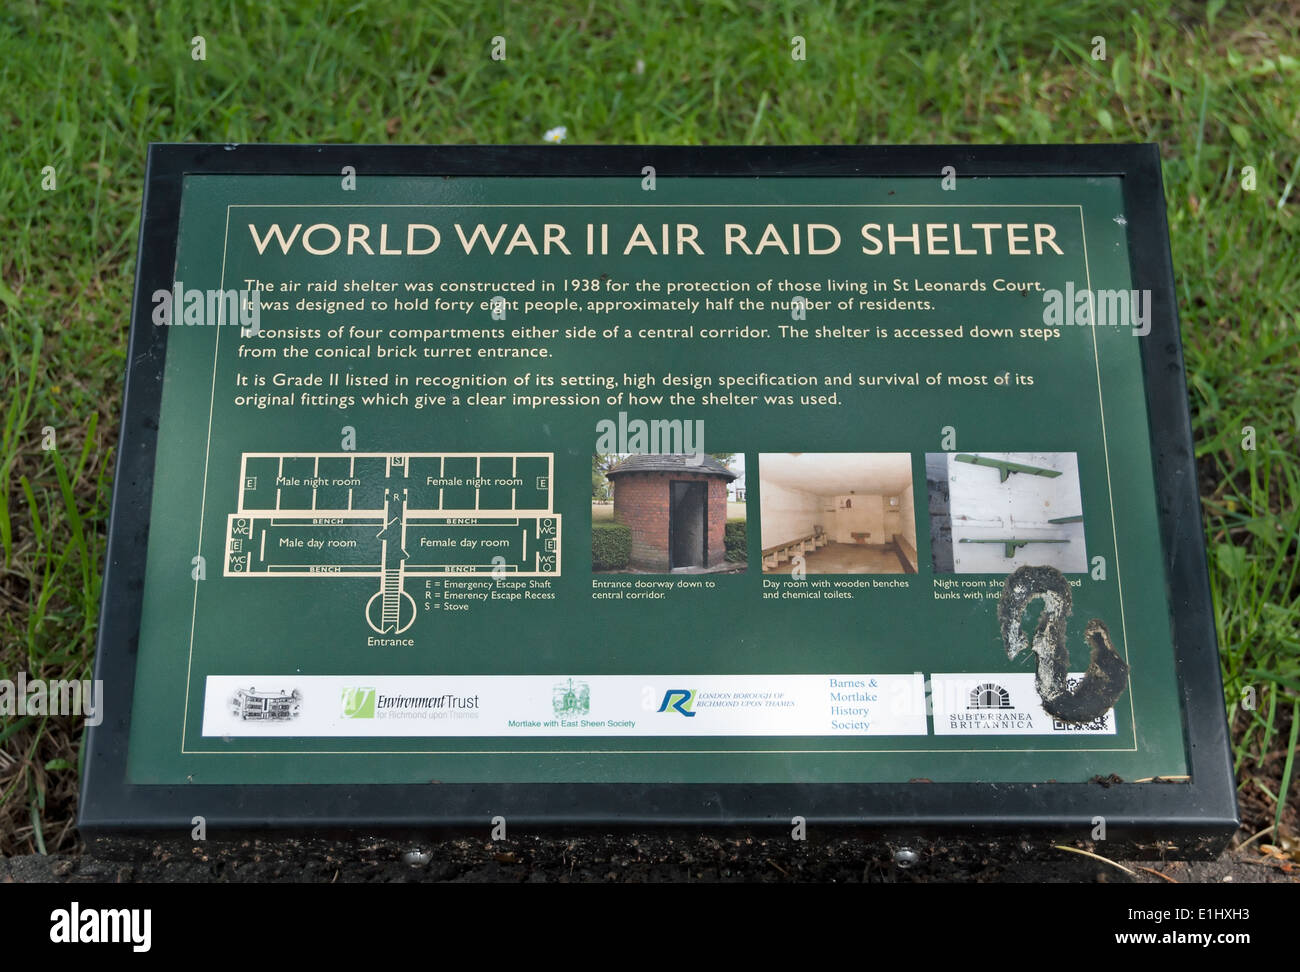 Signe de l'information décrivant un monde préservé la guerre deux abris de protection de l'air, de l'est, sud-ouest de Sheen London, England Banque D'Images